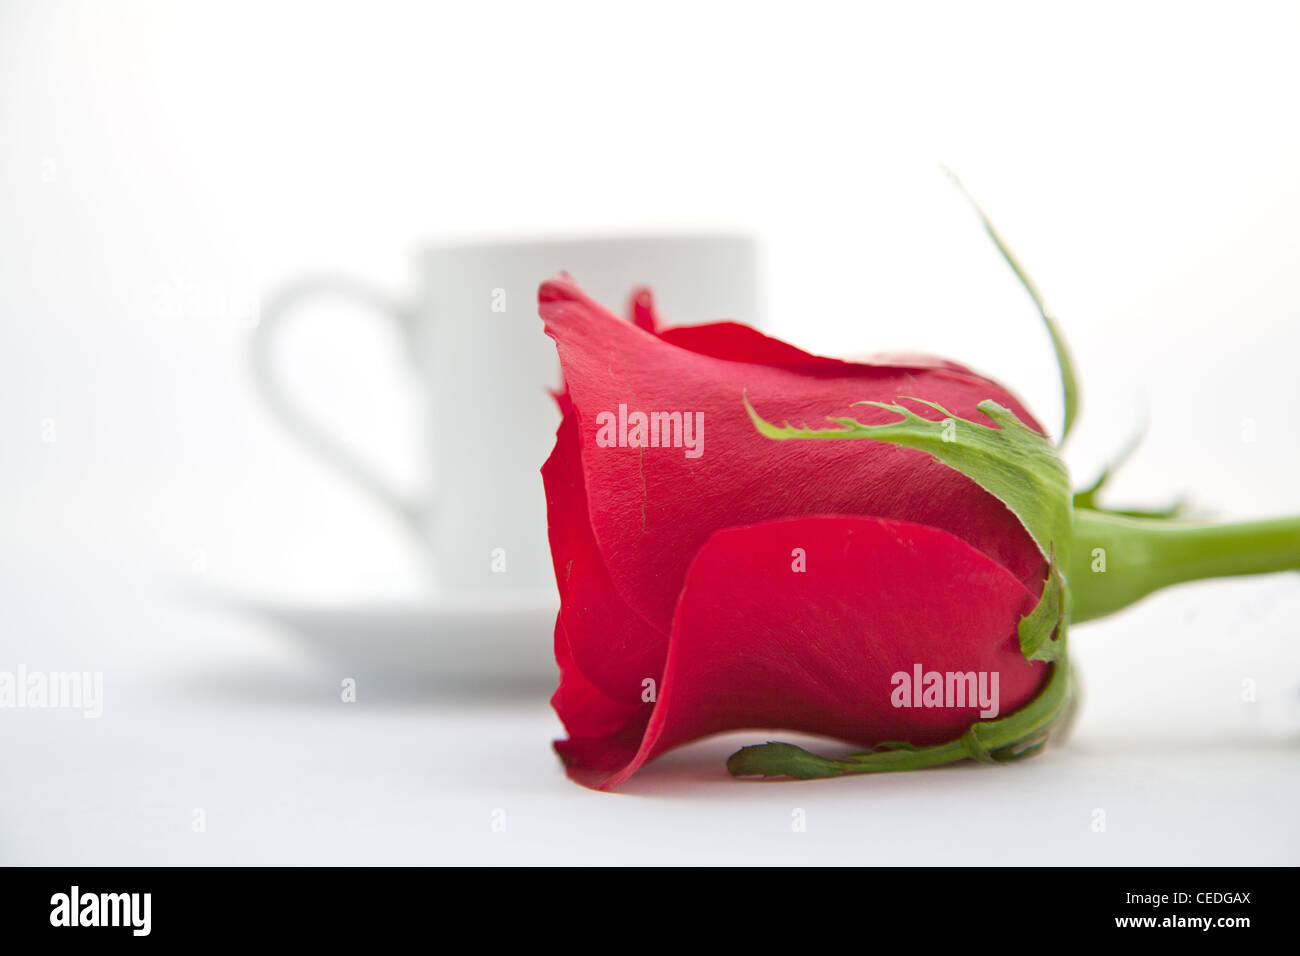 Rosa roja y blanca de la taza de café espresso Foto de stock